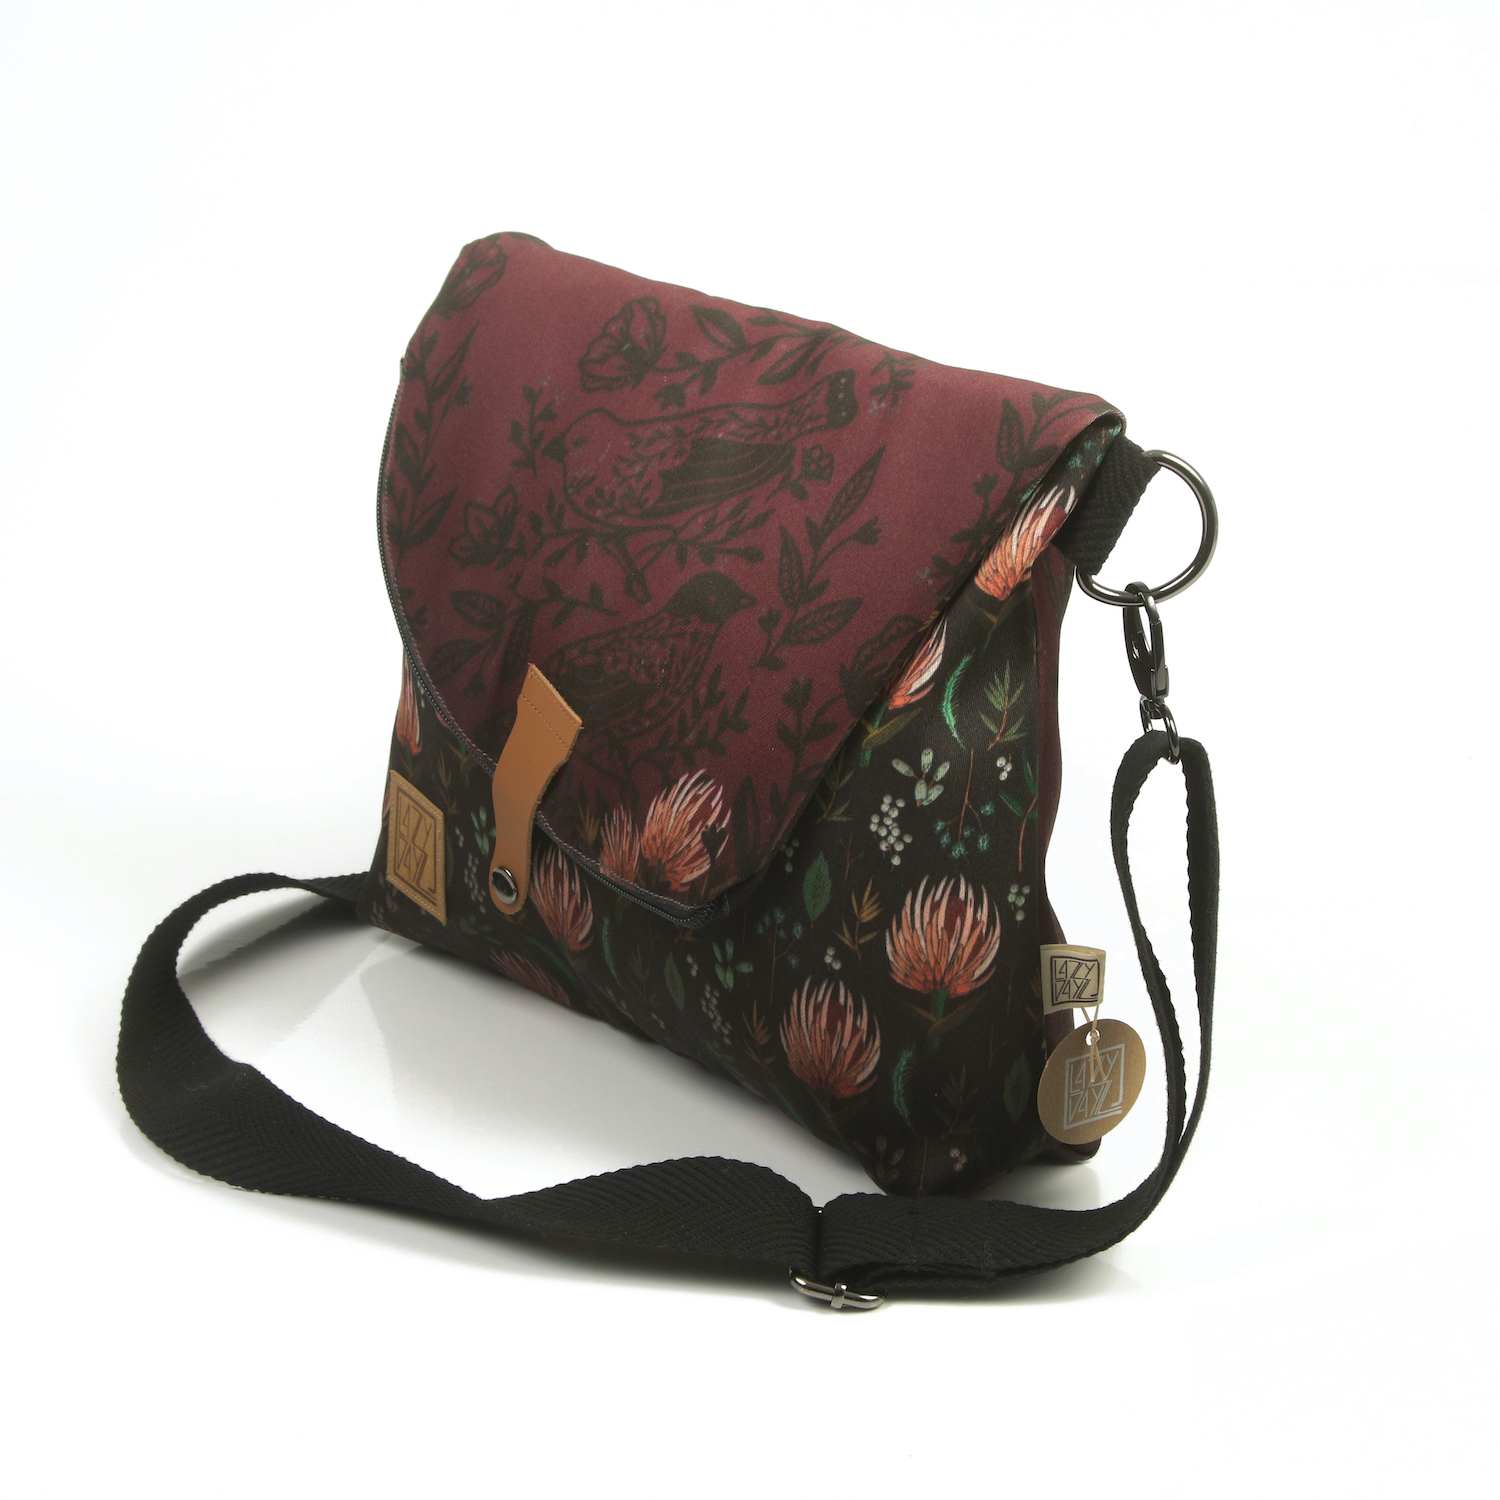 LazyDayz Messenger Bag γυναικεία τσάντα χιαστί χειροποίητη bm0204b